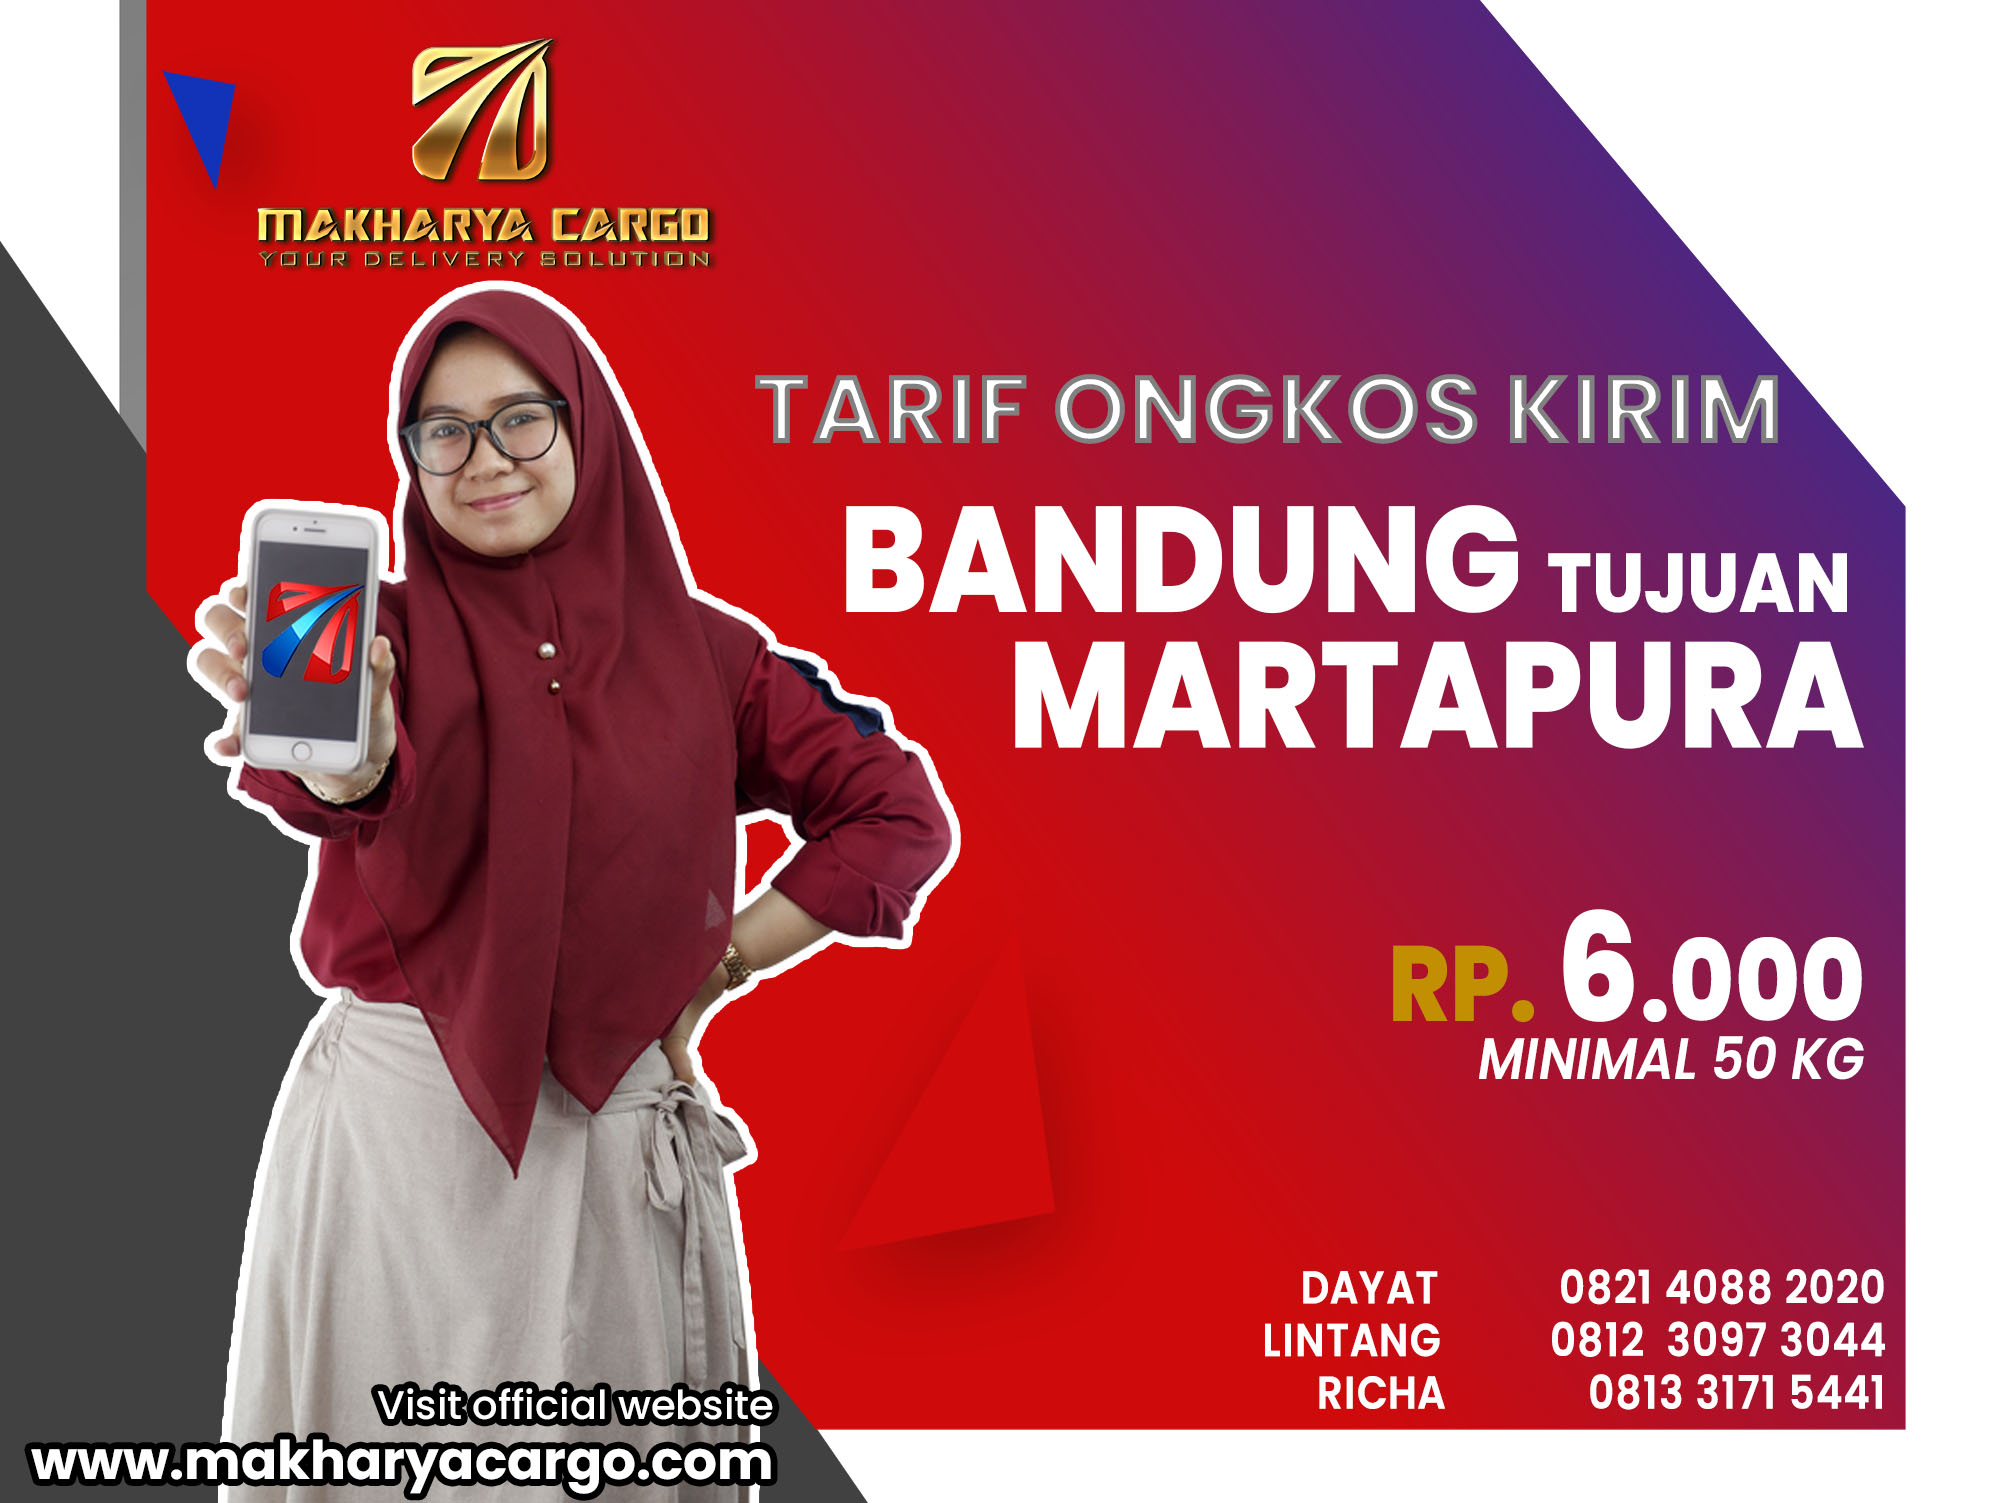 Tarif Ongkos Kirim Bandung Martapura